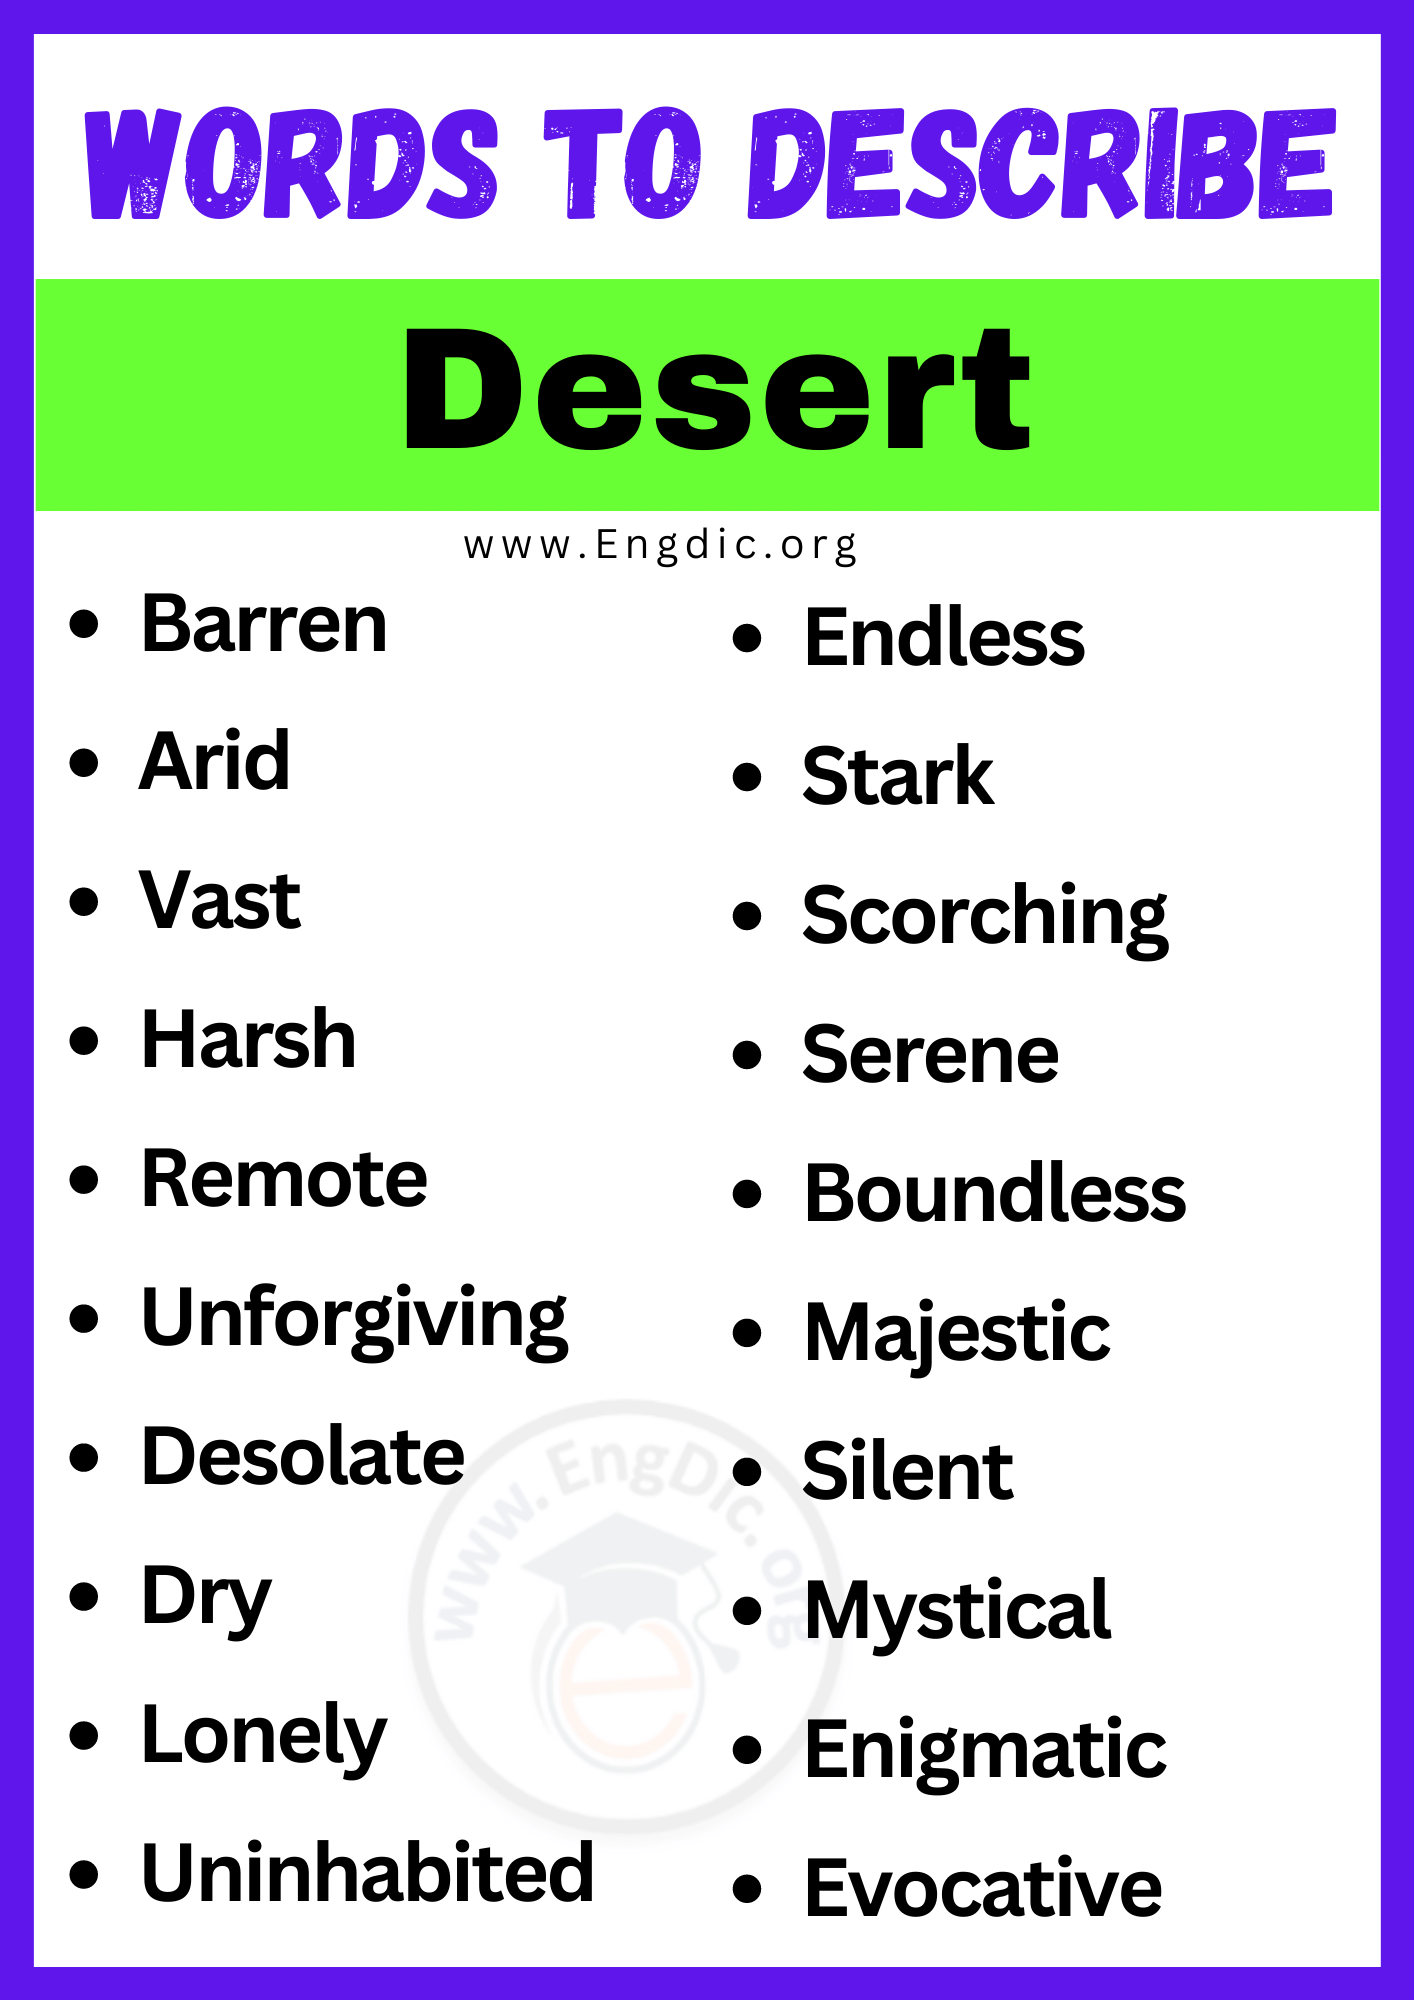 Words to Describe Desert